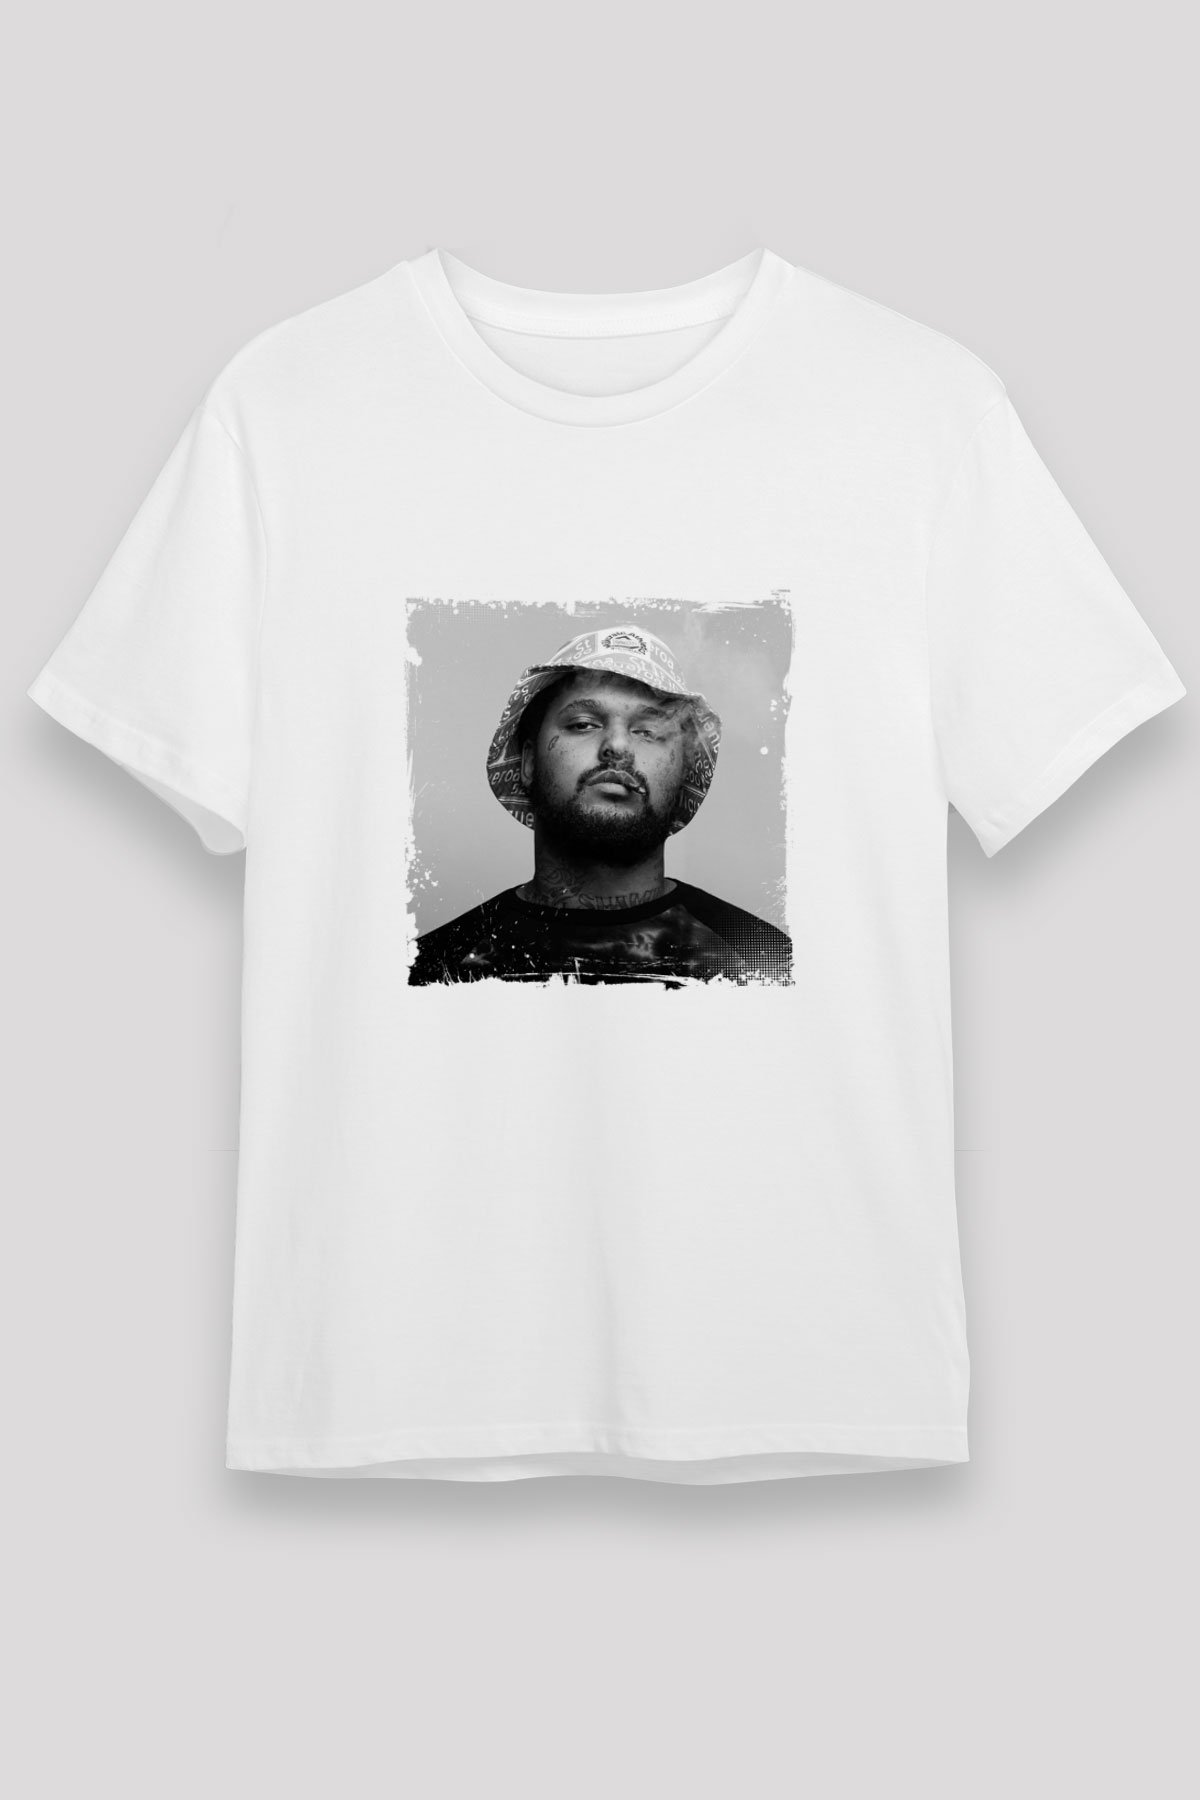 Schoolboy Q T shirt,Hip Hop,Rap Tshirt 06